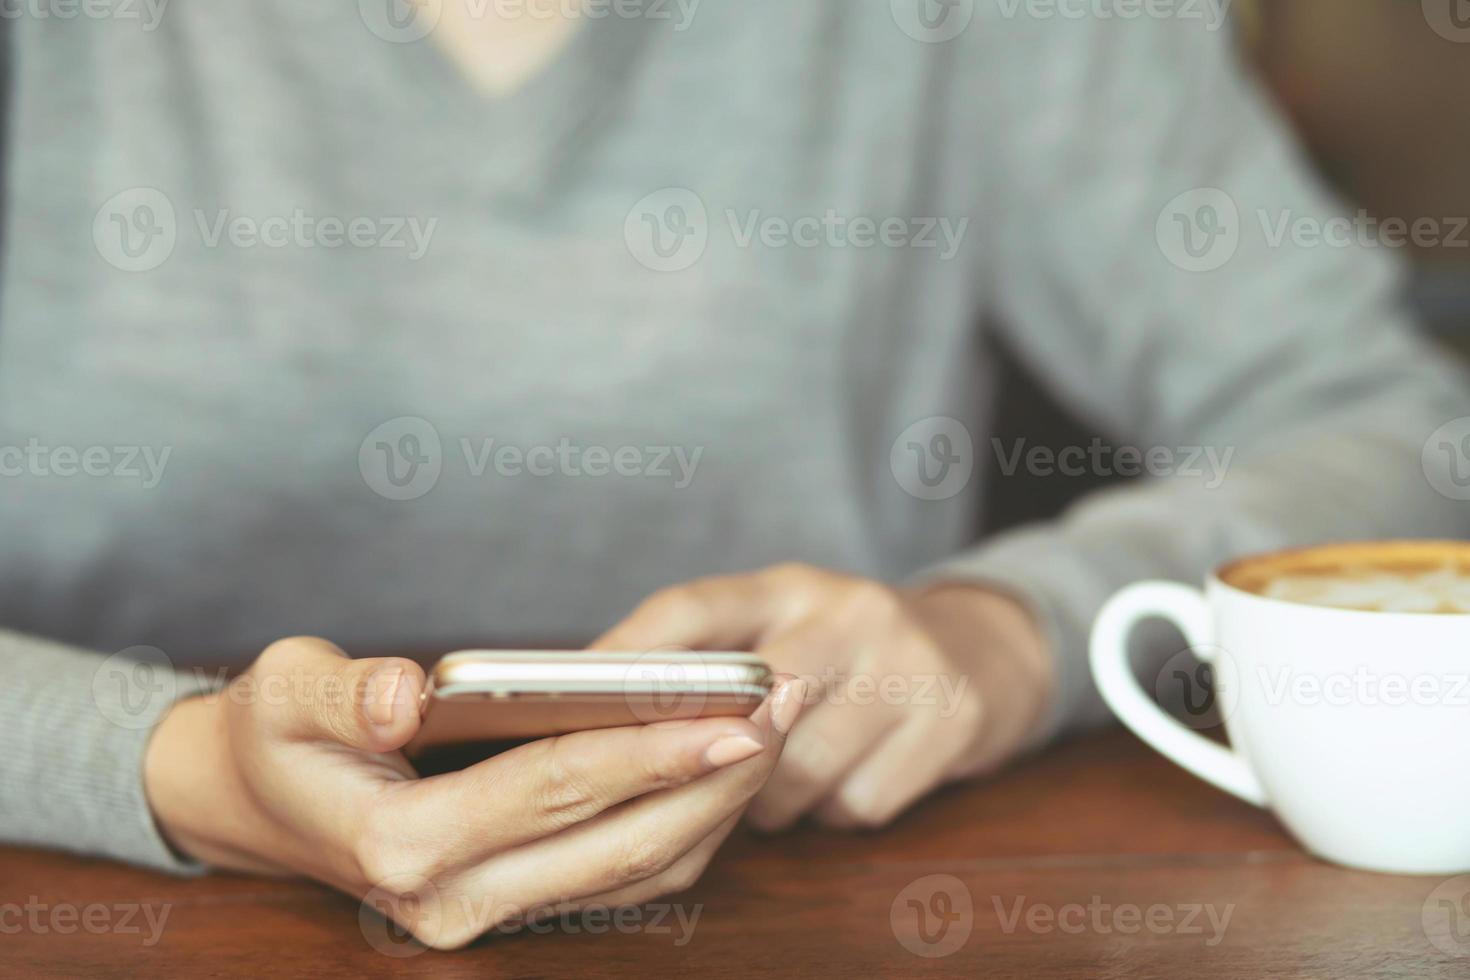 Feche as mãos da mulher segurando usando a tela de espaço de cópia em branco do telefone móvel inteligente vazia para sua mensagem de texto de publicidade na vista superior e bebendo uma xícara de café no fundo da mesa de madeira no café. foco suave foto